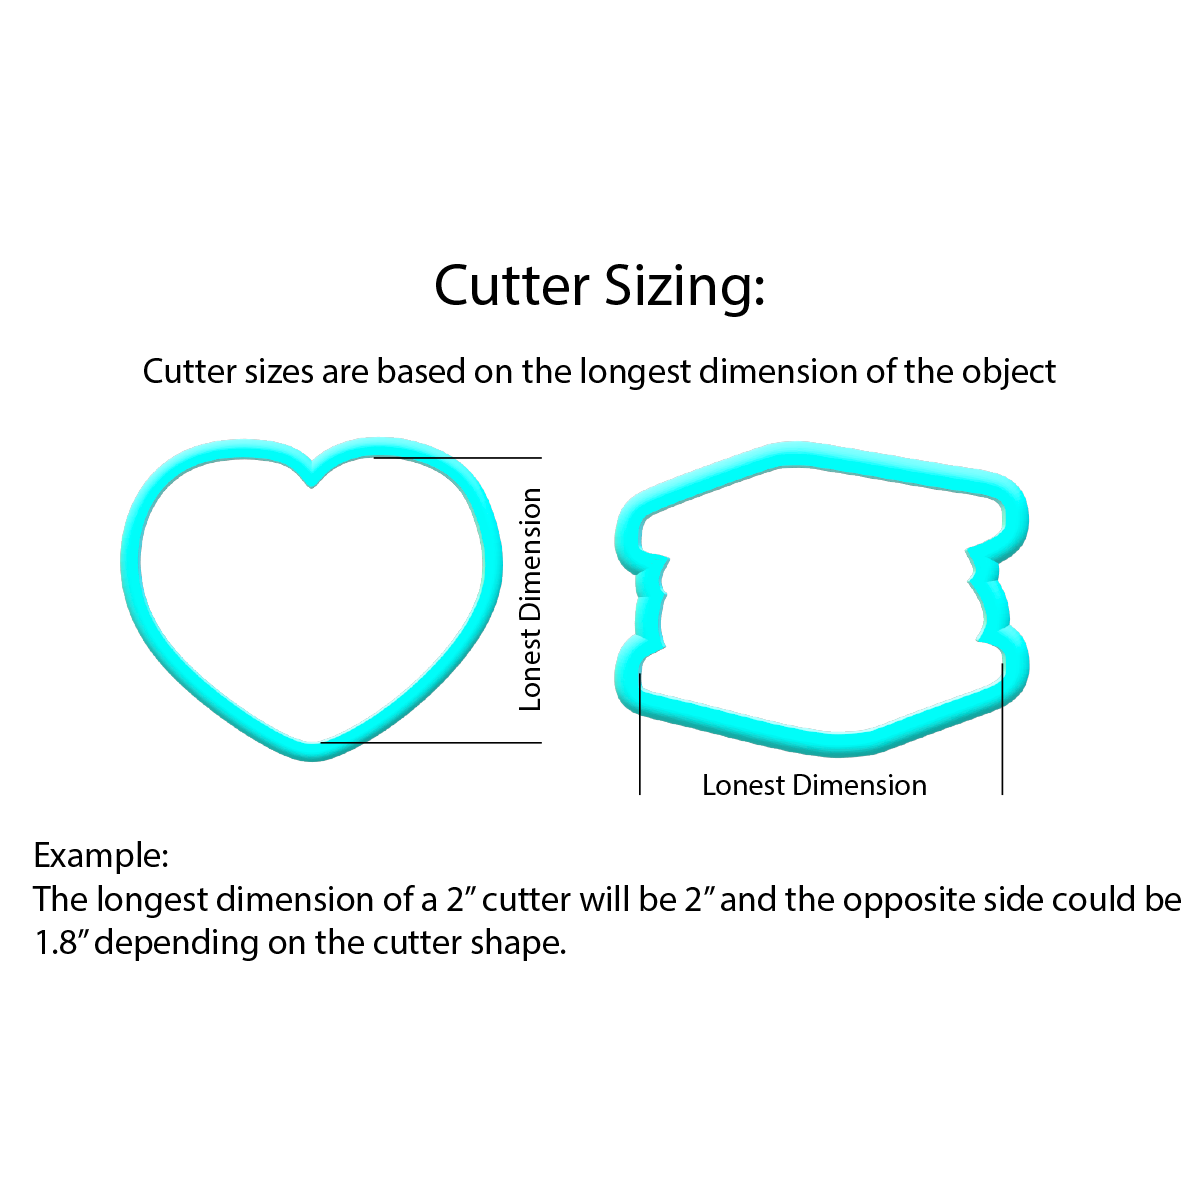 Cat Cookie Cutters